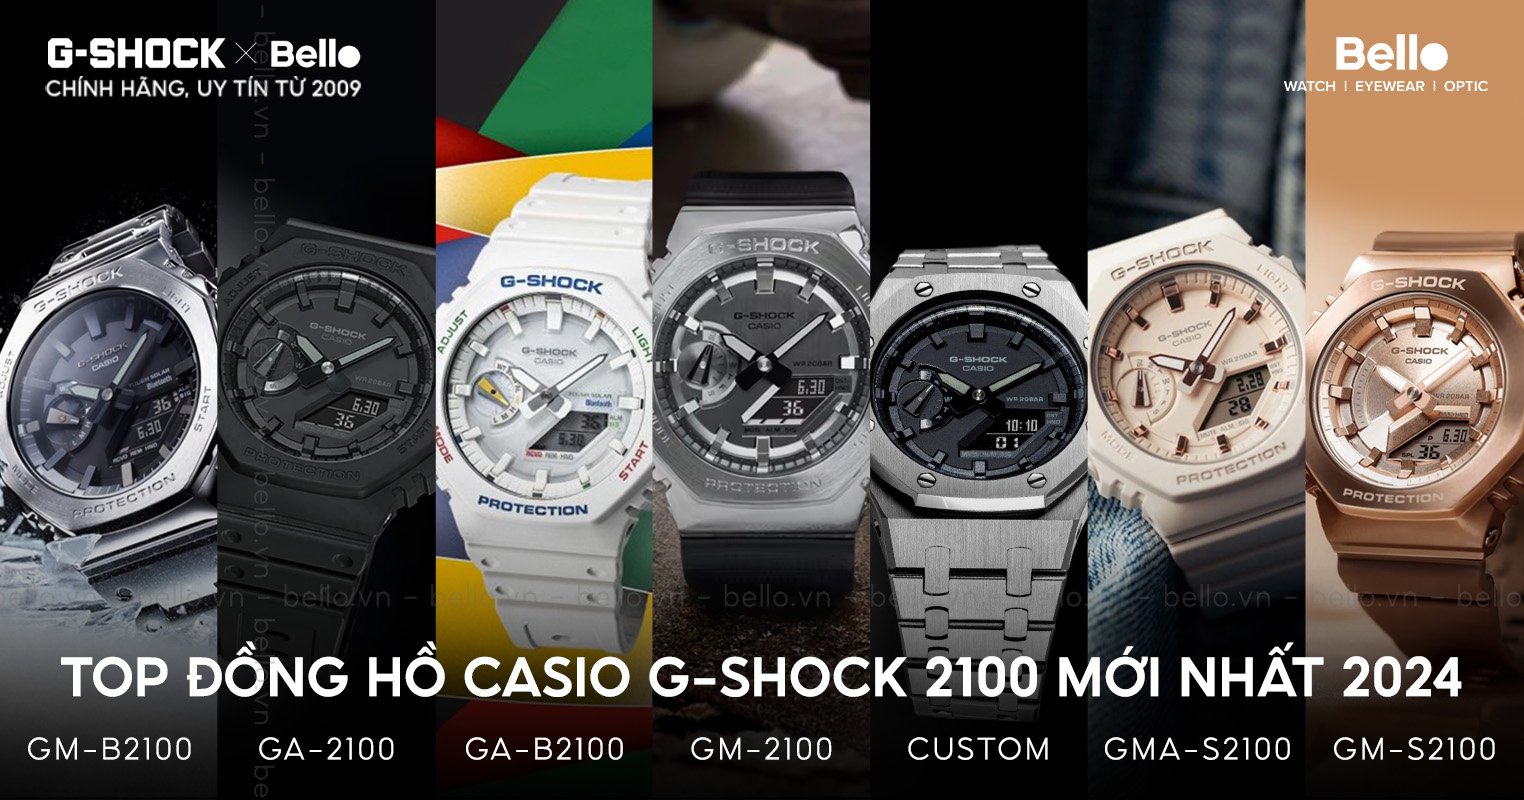 Top đồng hồ Casio G-Shock 2100 mới nhất 2024